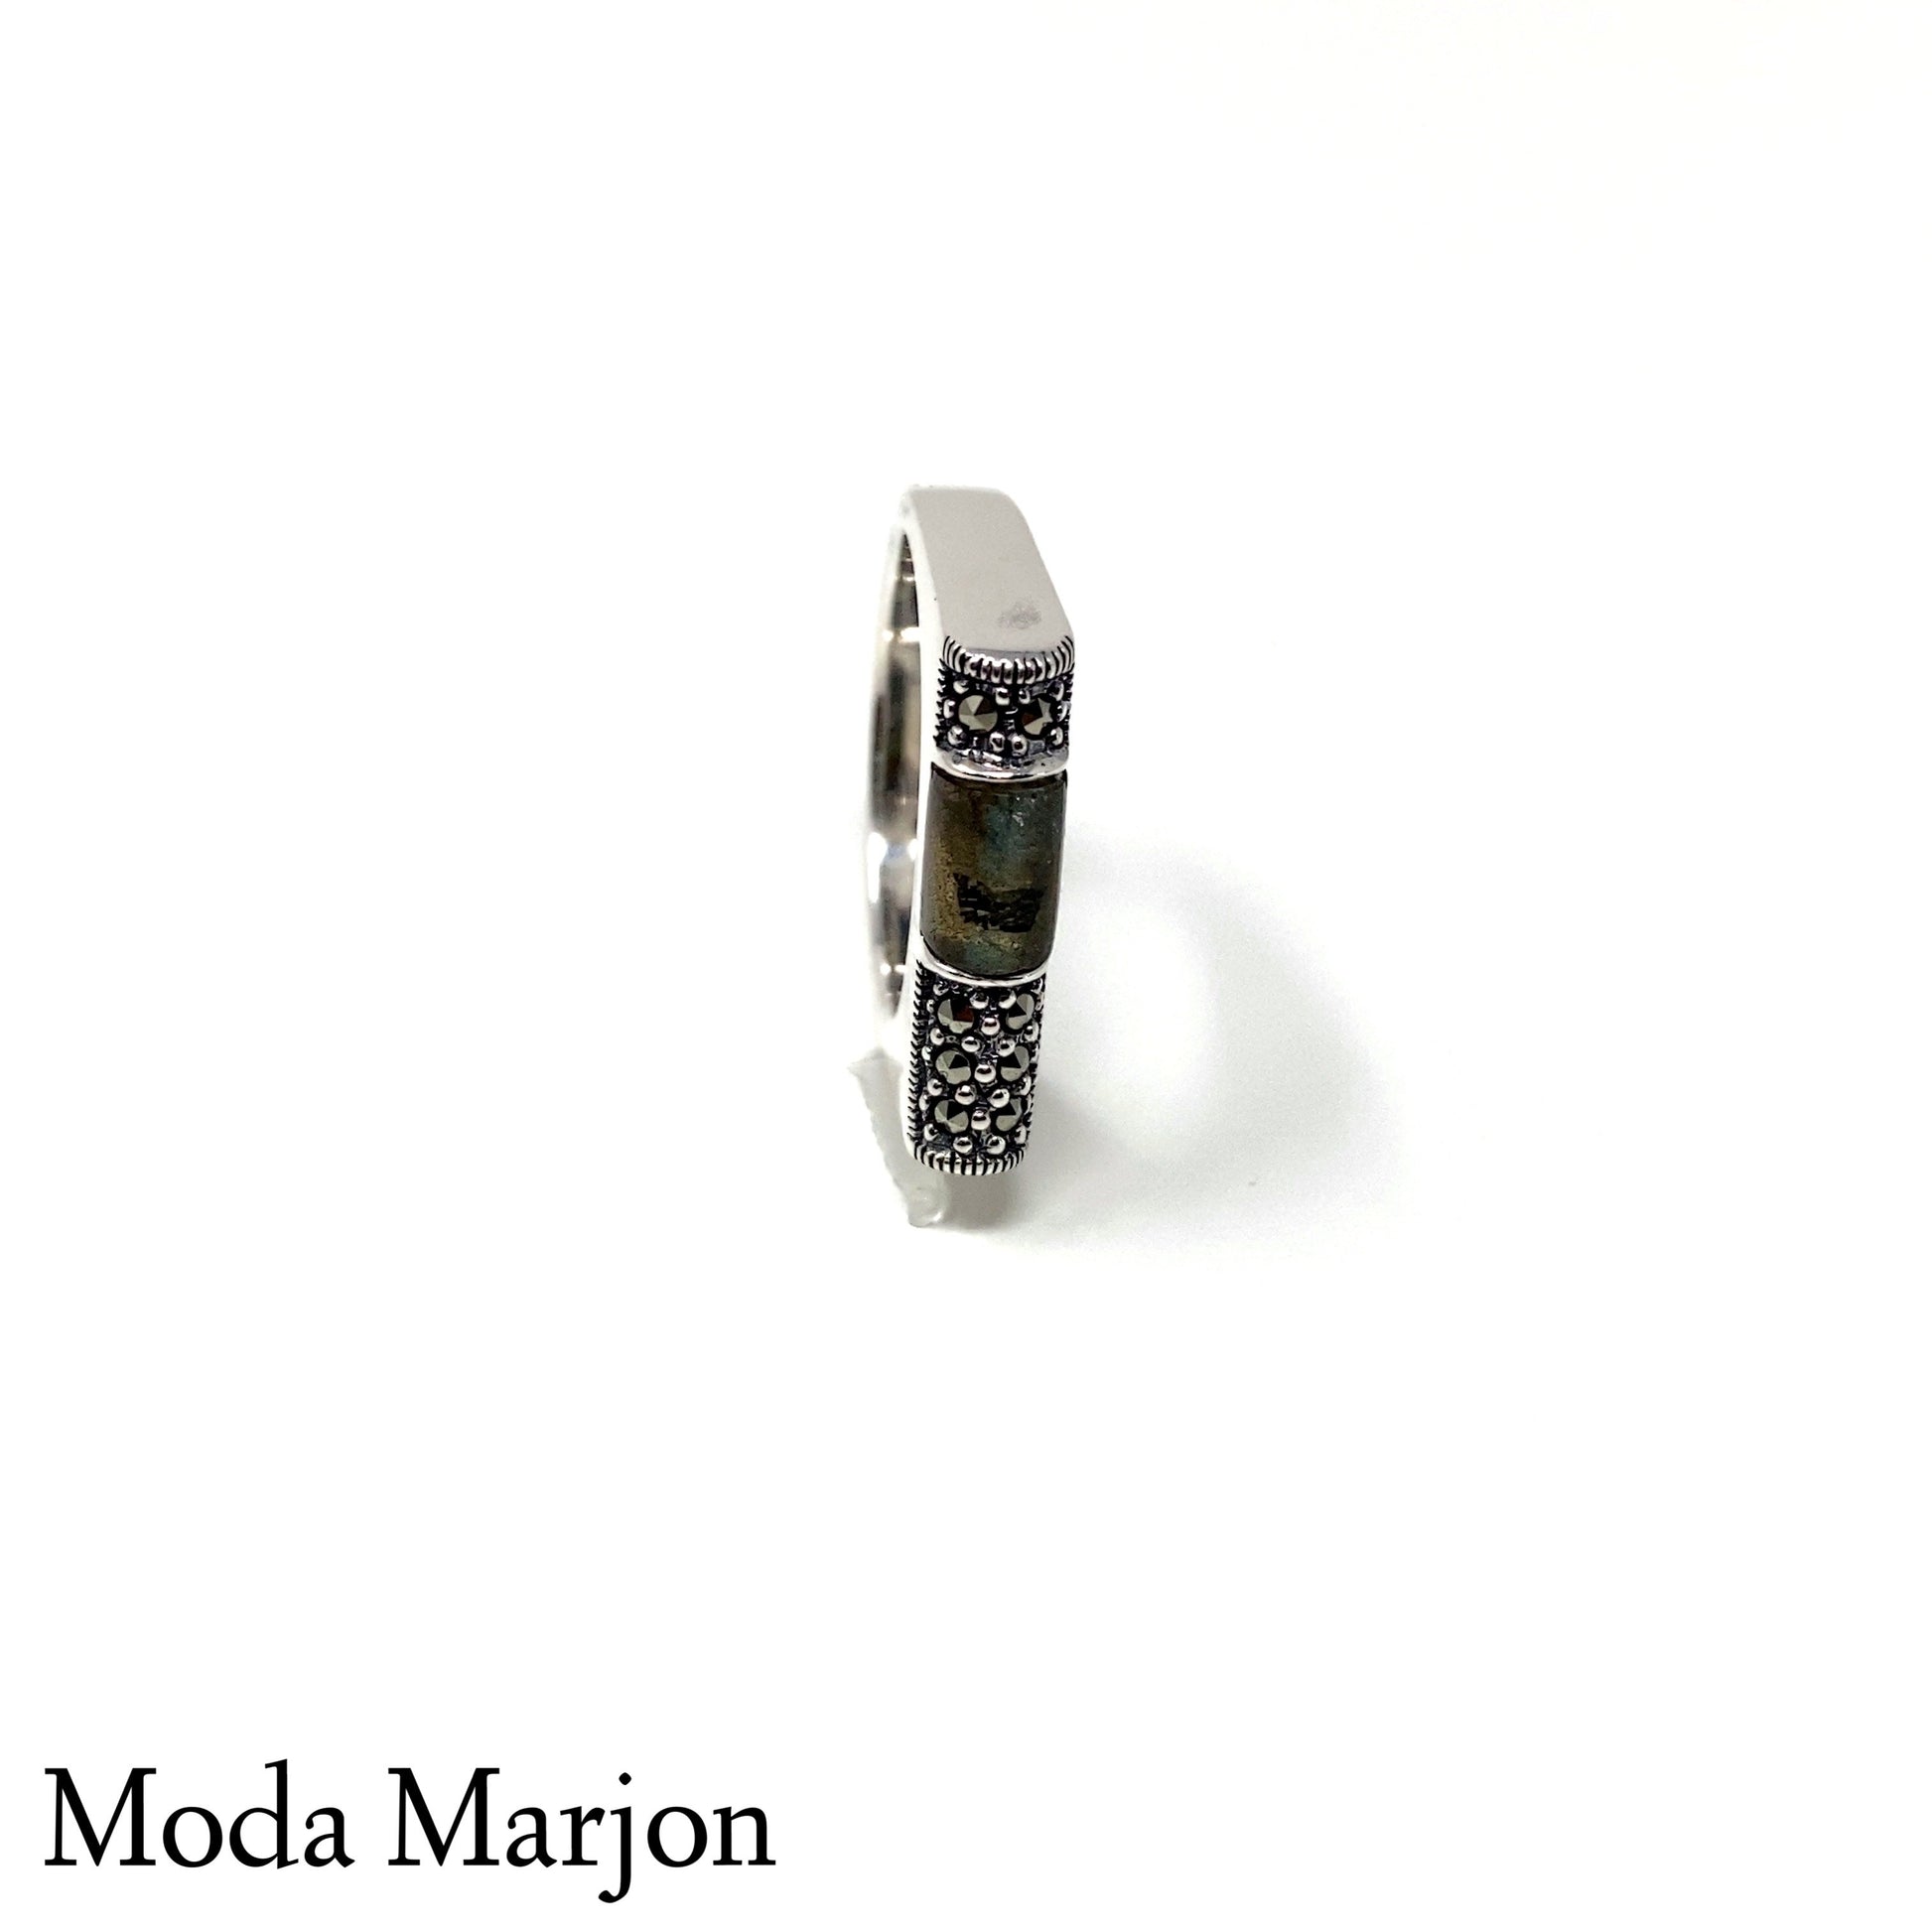 MMMS-R101 - Moda Marjon 